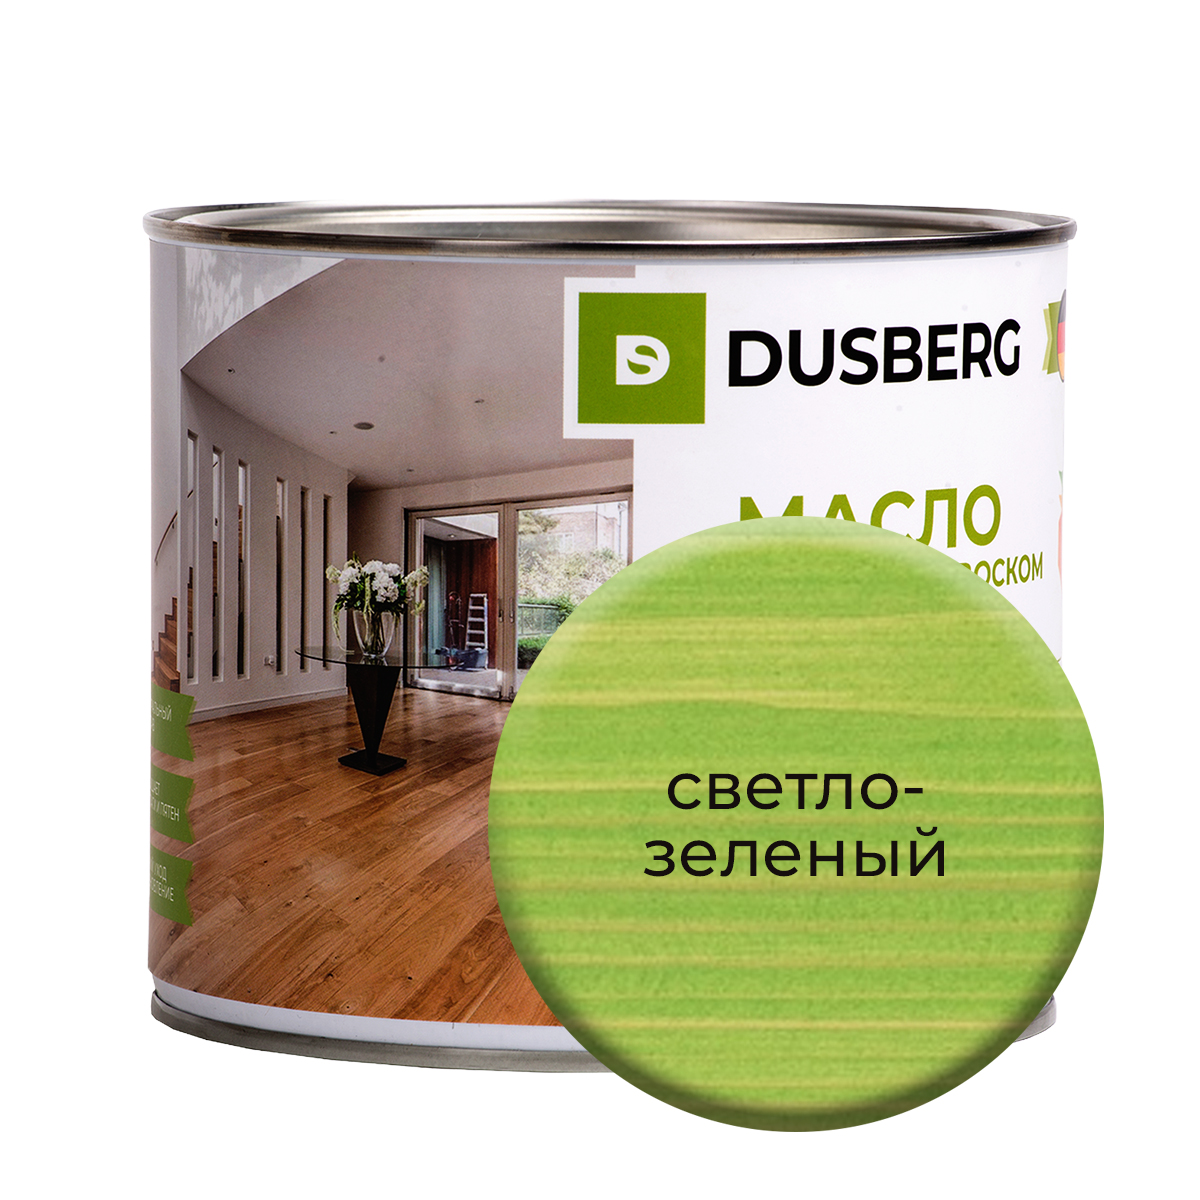 Масло Dusberg с твердым воском на бесцветной основе, 2 л Светло-зеленый